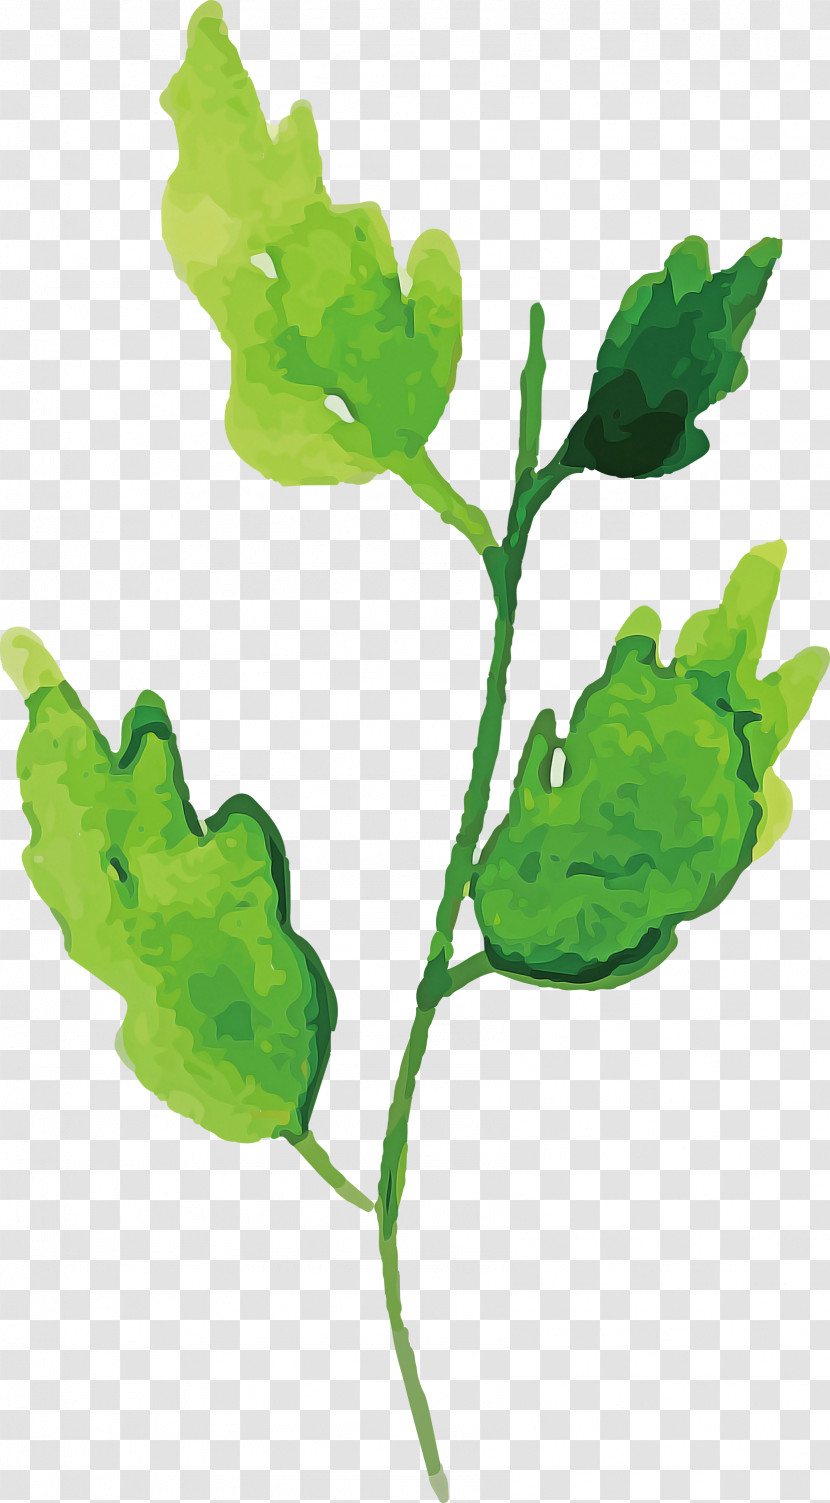 Leaf Plant Stem Leaf Vegetable Branch Paperplant Transparent PNG